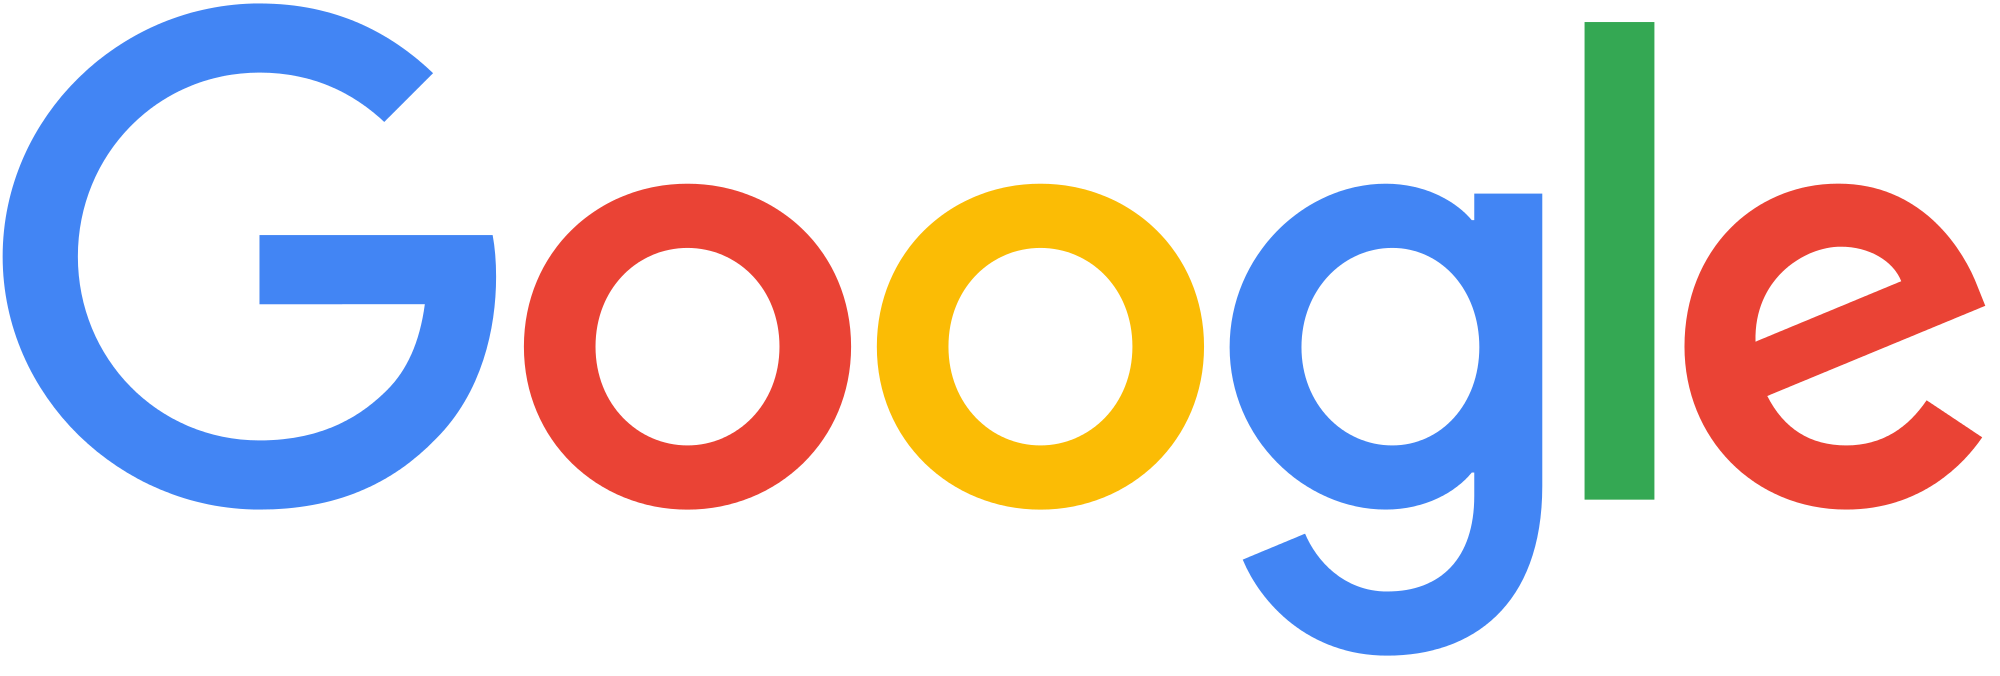 google-logo-png-transparent-background-large-new